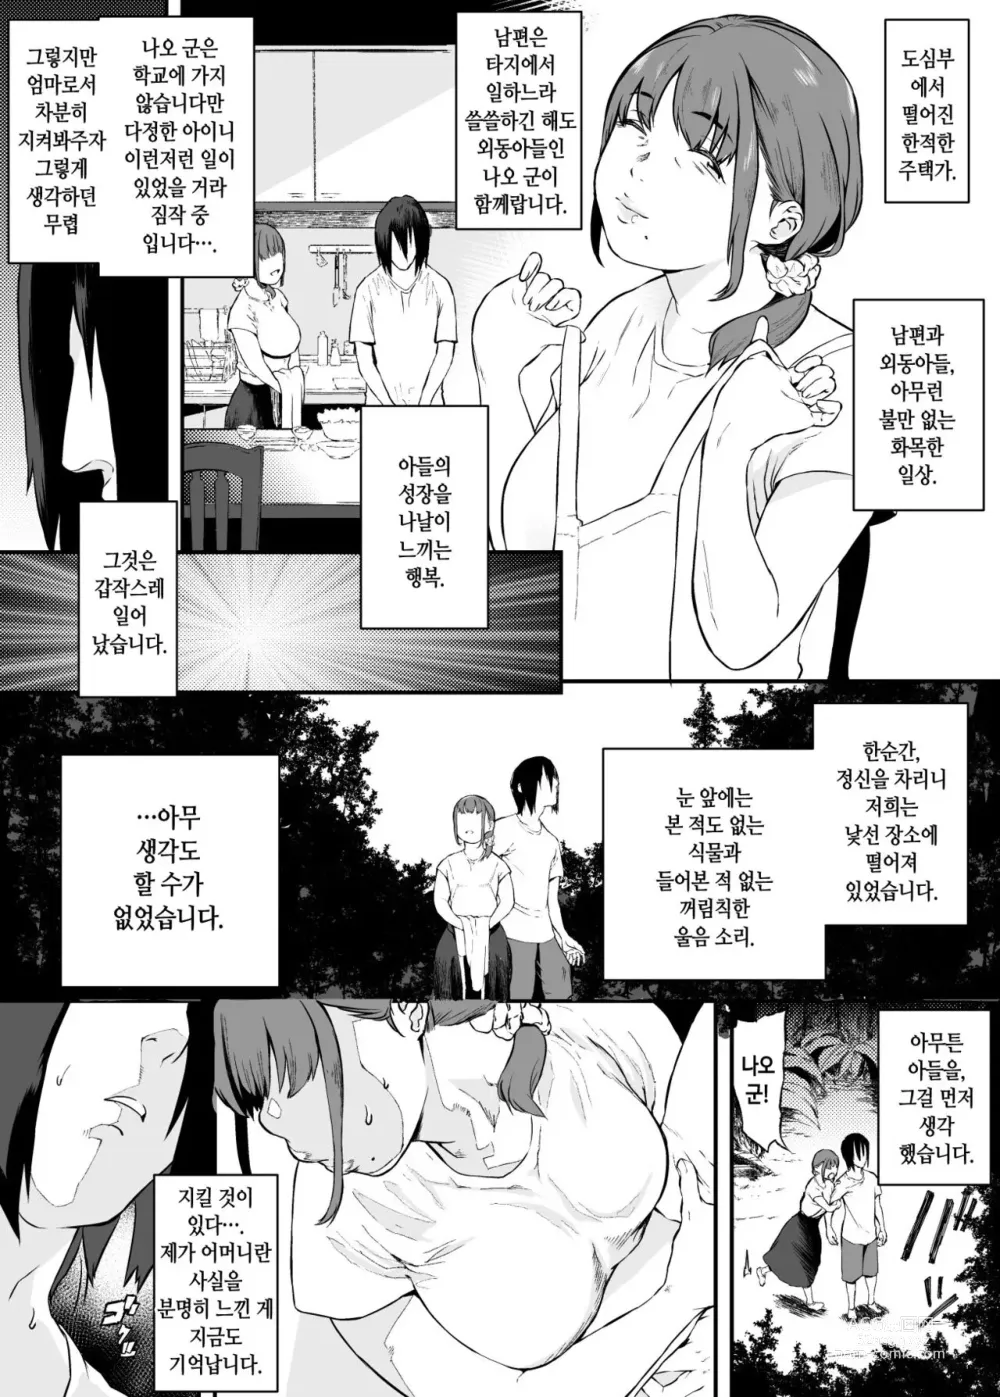 Page 3 of doujinshi 이세계에서 엄마랑